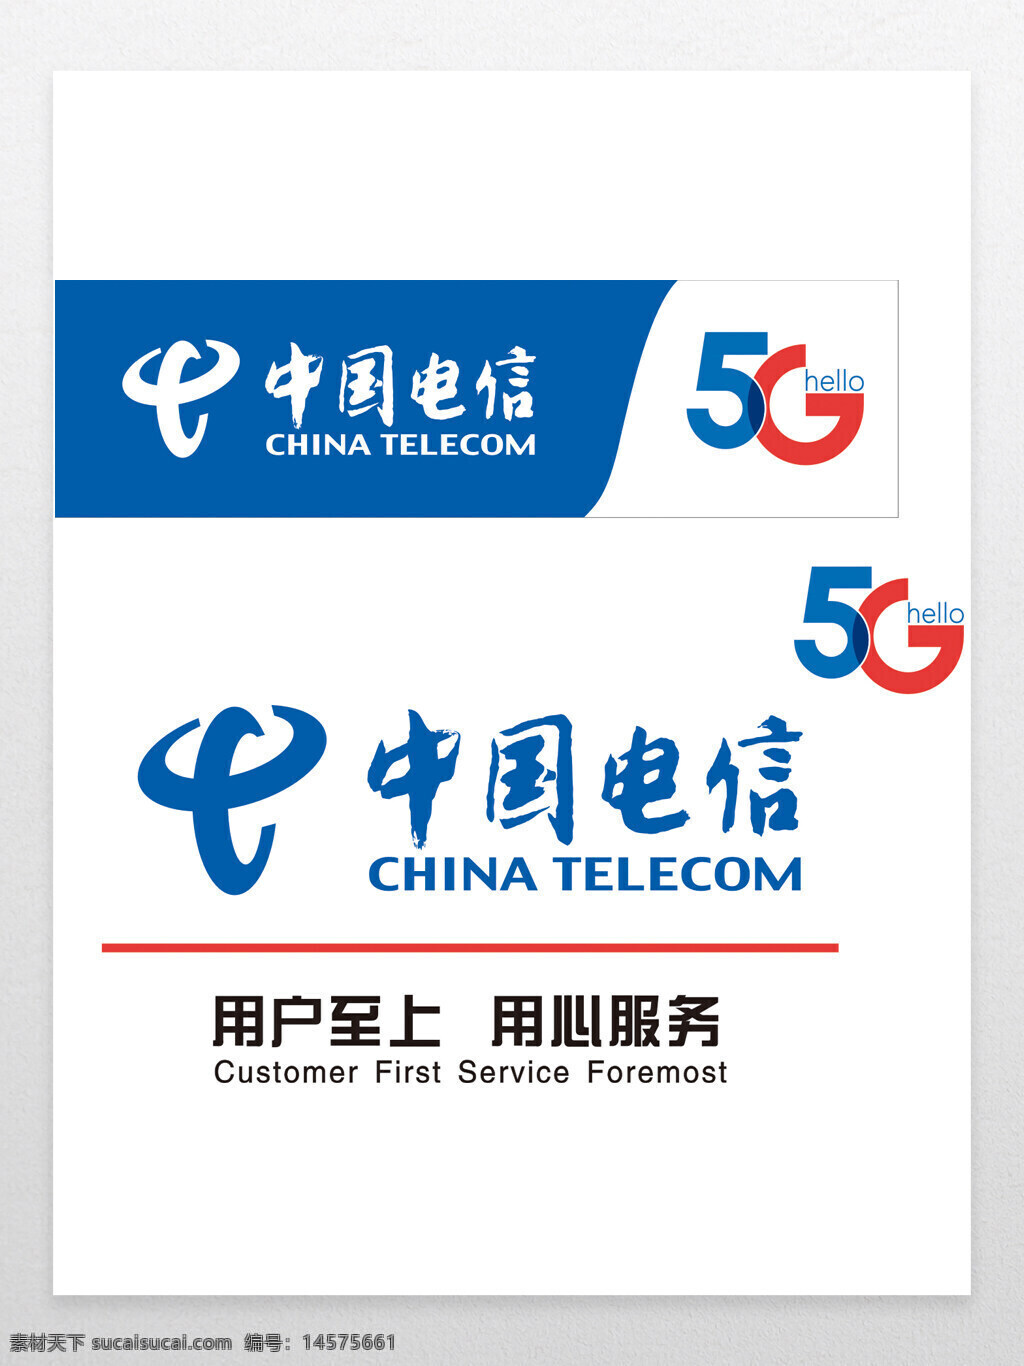 中国电信 中国电信图标 中国电信标志 中国电信logo 中国电信标识 中国电信海报 中国电信展板 中国电信年会 中国电信背景 中国电信元素 中国电信素材 中国电信设计 中国电信展架